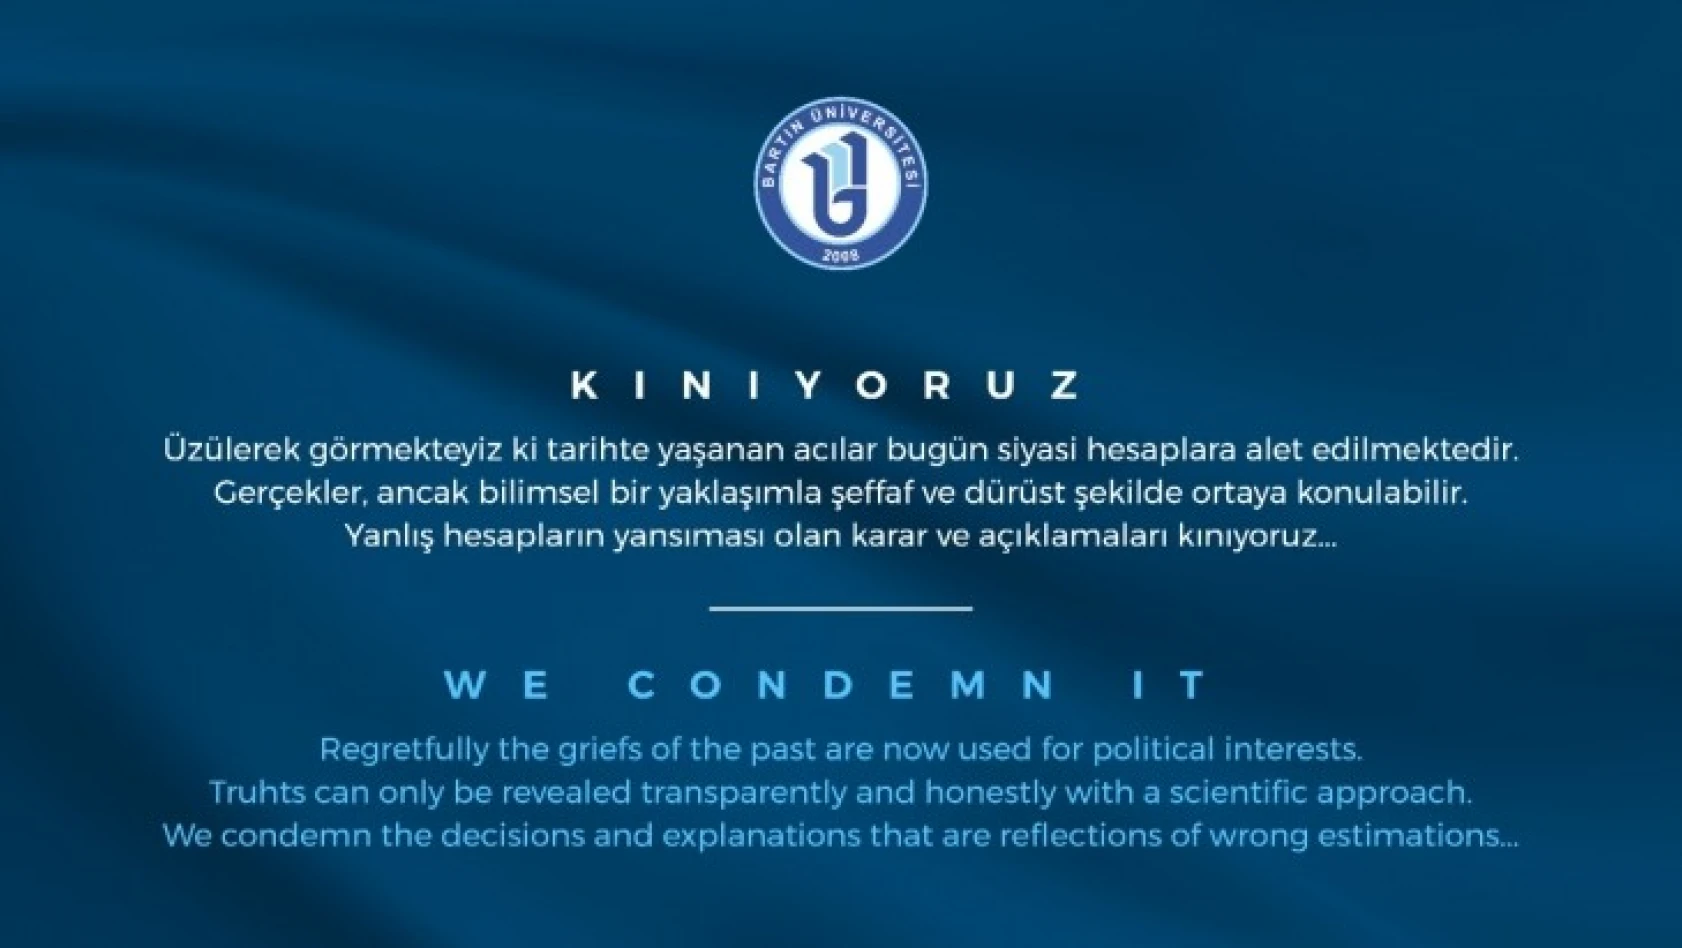 Bartın Üniversitesi 'Sözde Soykır ım' iddiasını kınadı